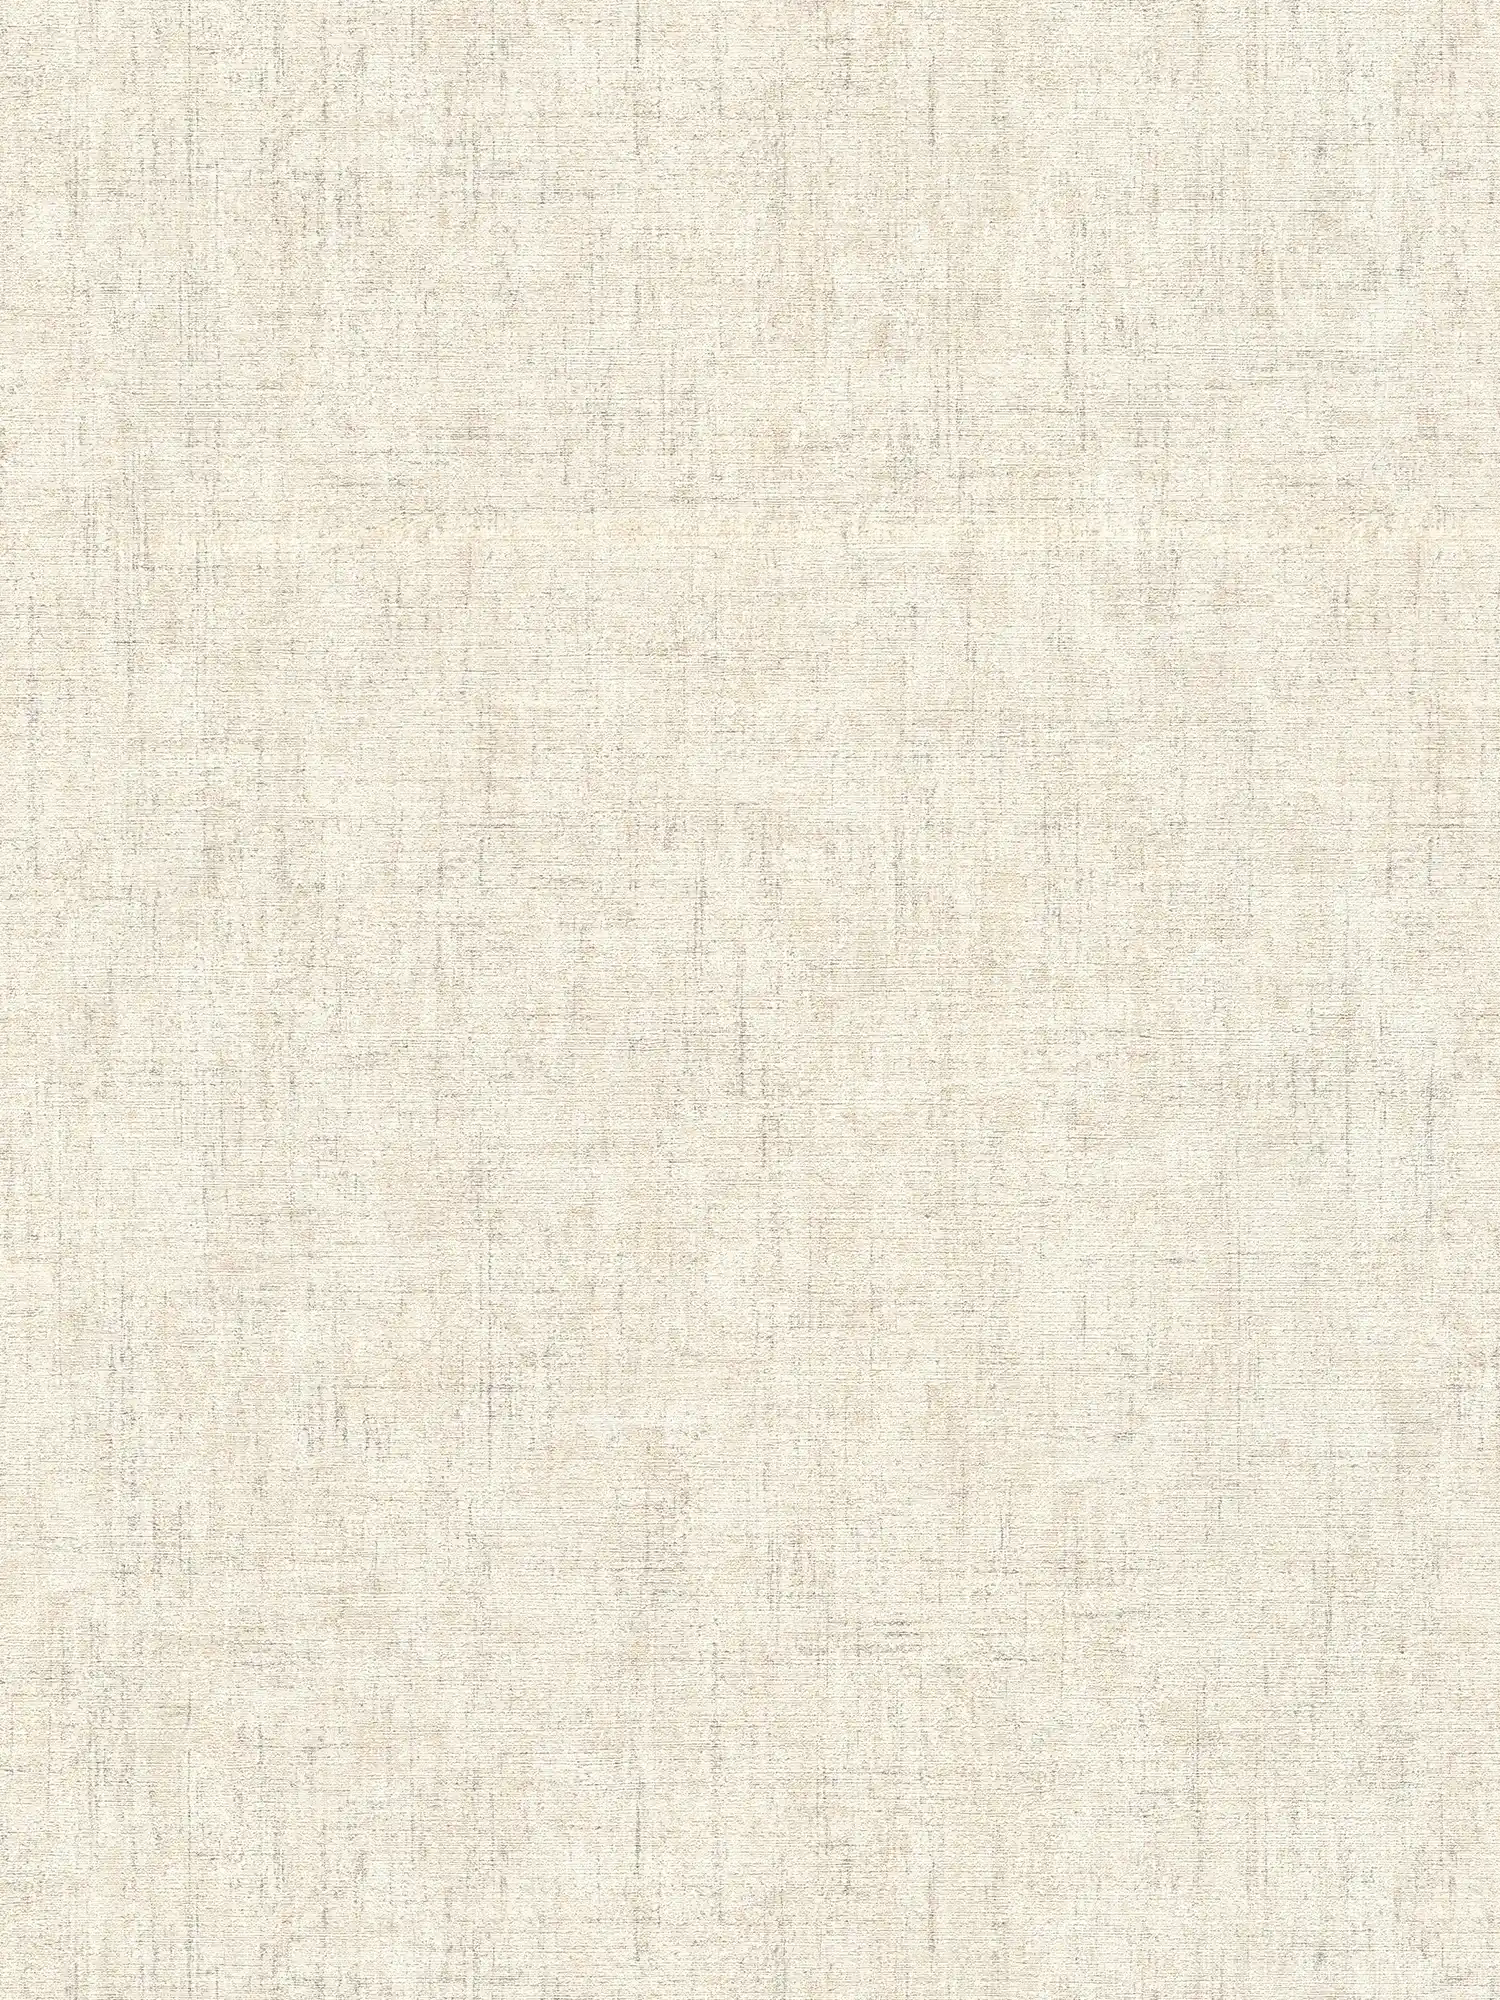         Papier peint uni chiné & design naturel - beige, crème
    